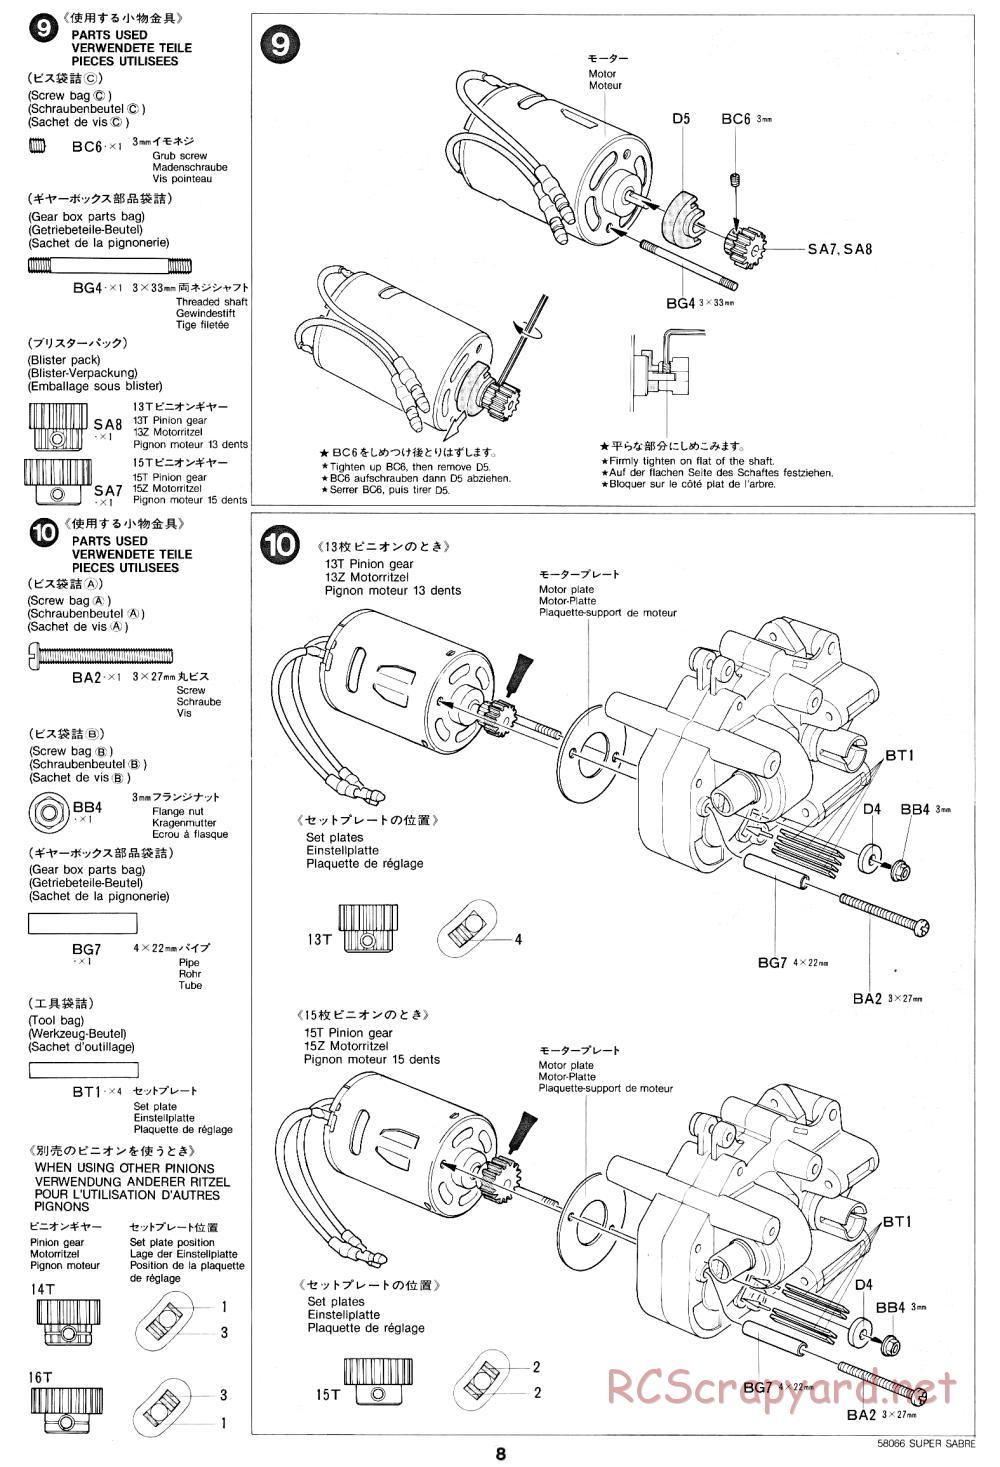 Tamiya - Super Sabre - 58066 - Manual - Page 8